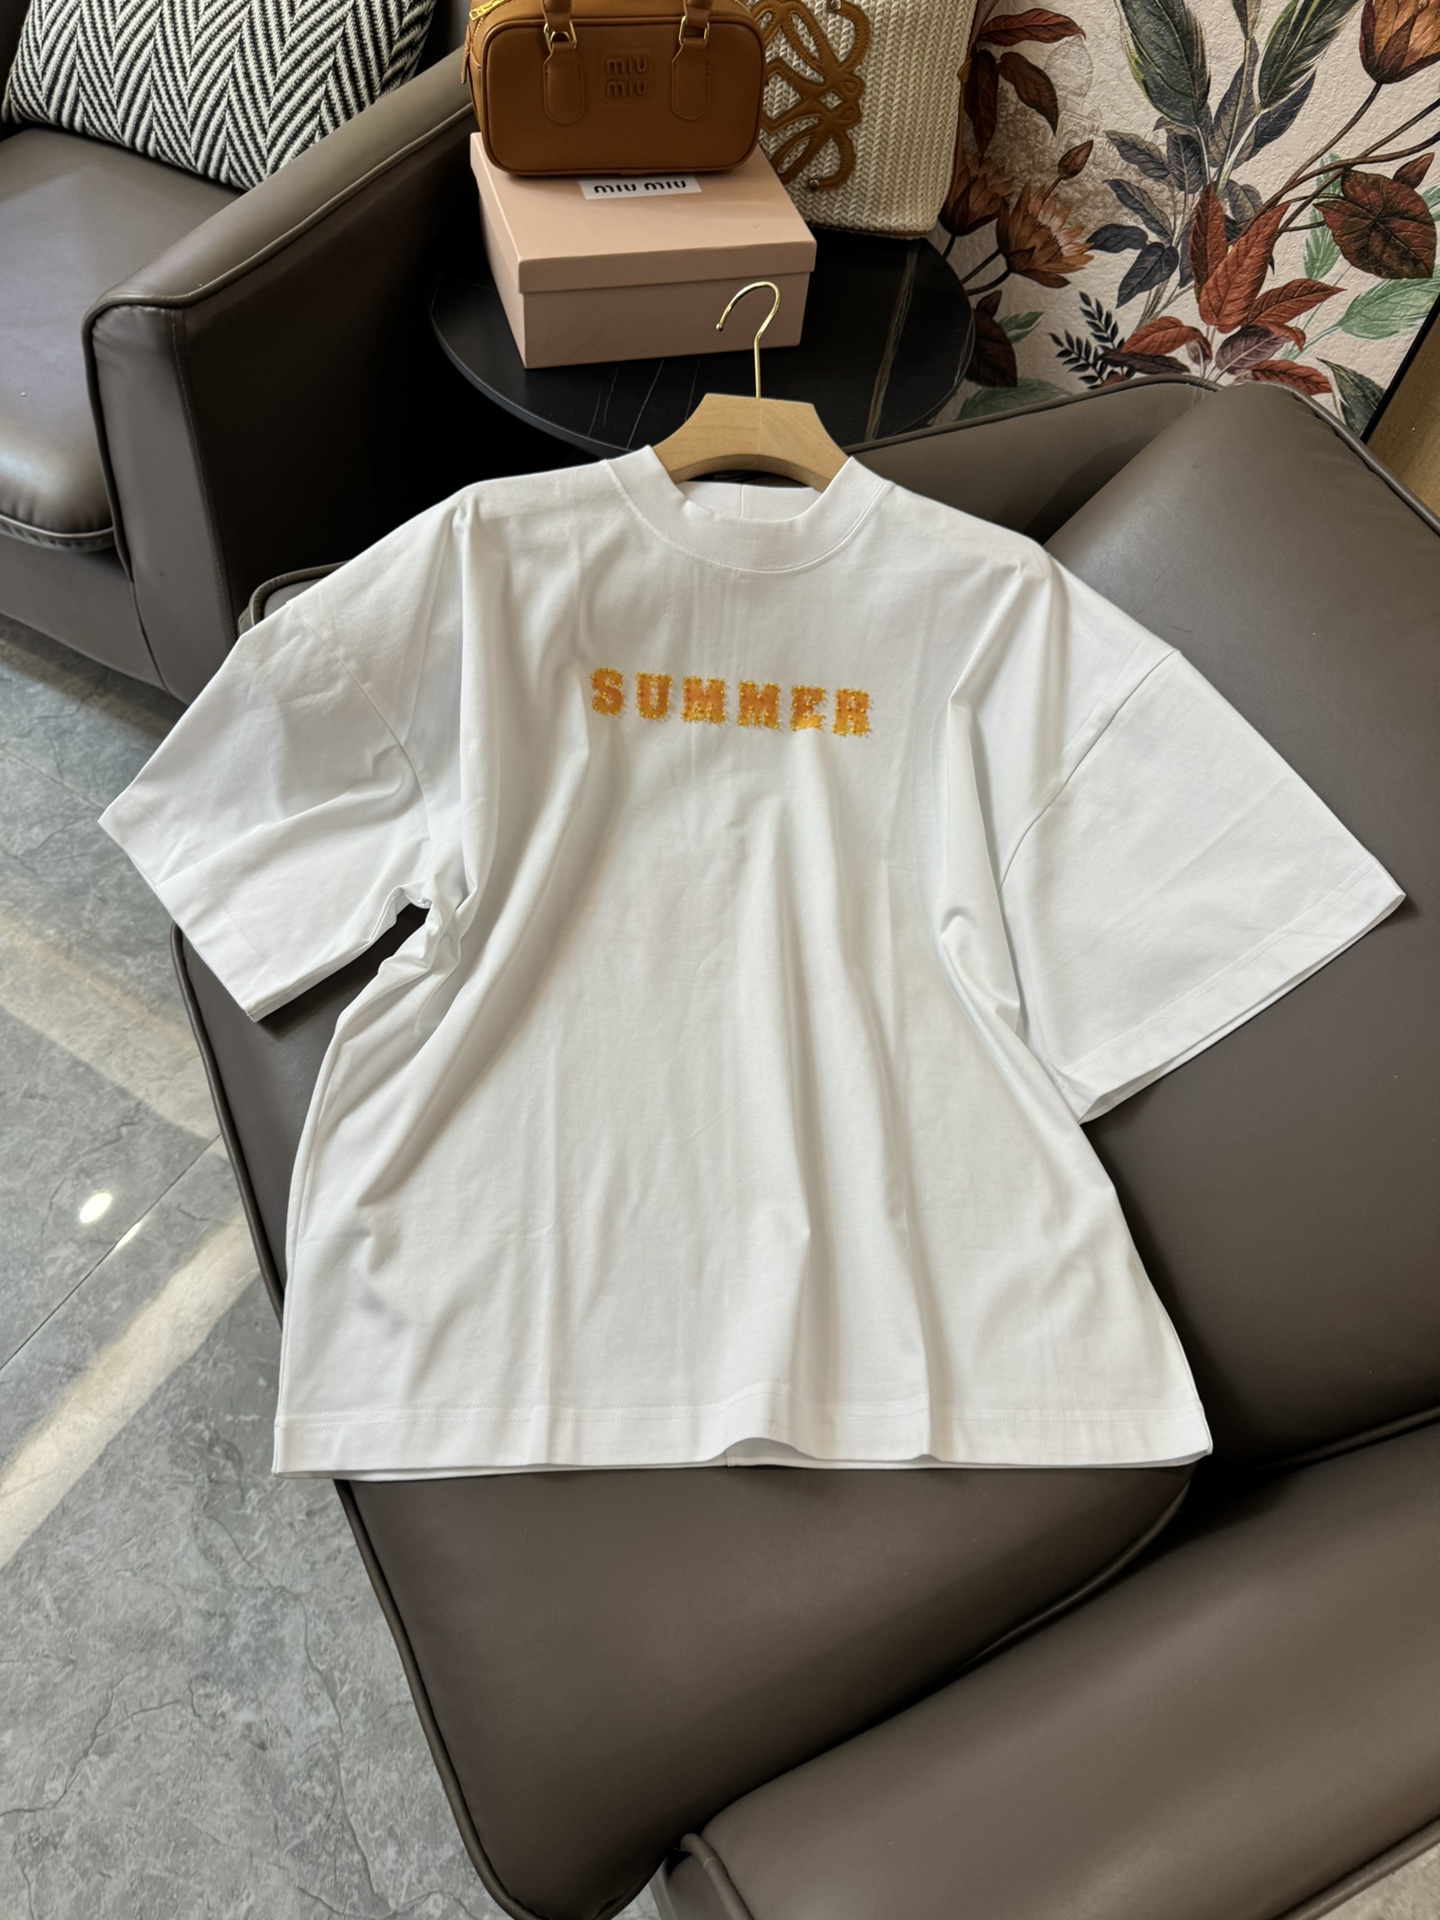 DG006#新款T恤⚠️Pybdly 原创 字母印花 短袖宽松款 T恤  白色  SML